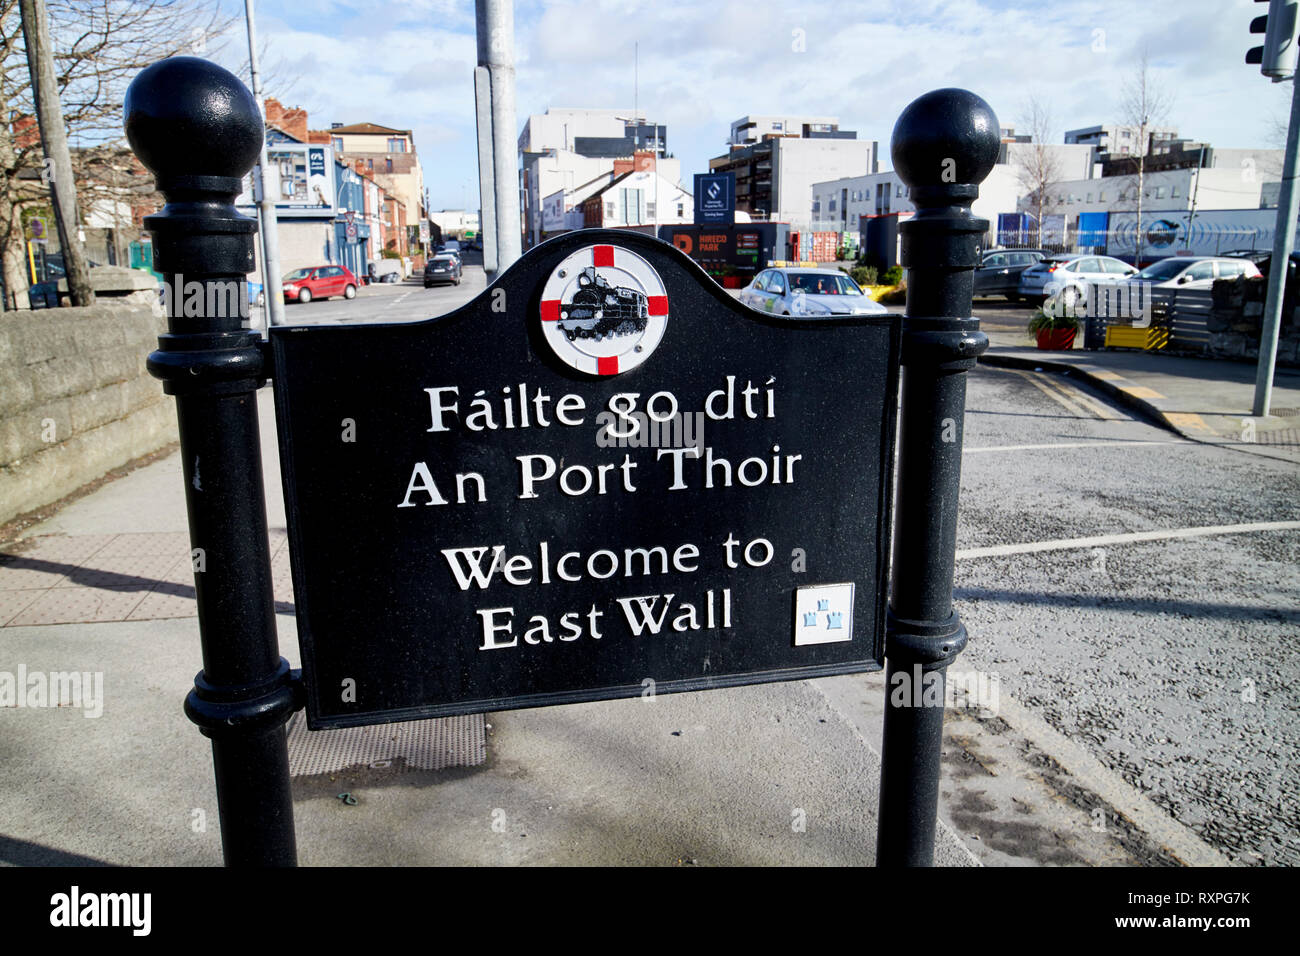 Bienvenue à east wall panneaux Dublin République d'Irlande europe Banque D'Images